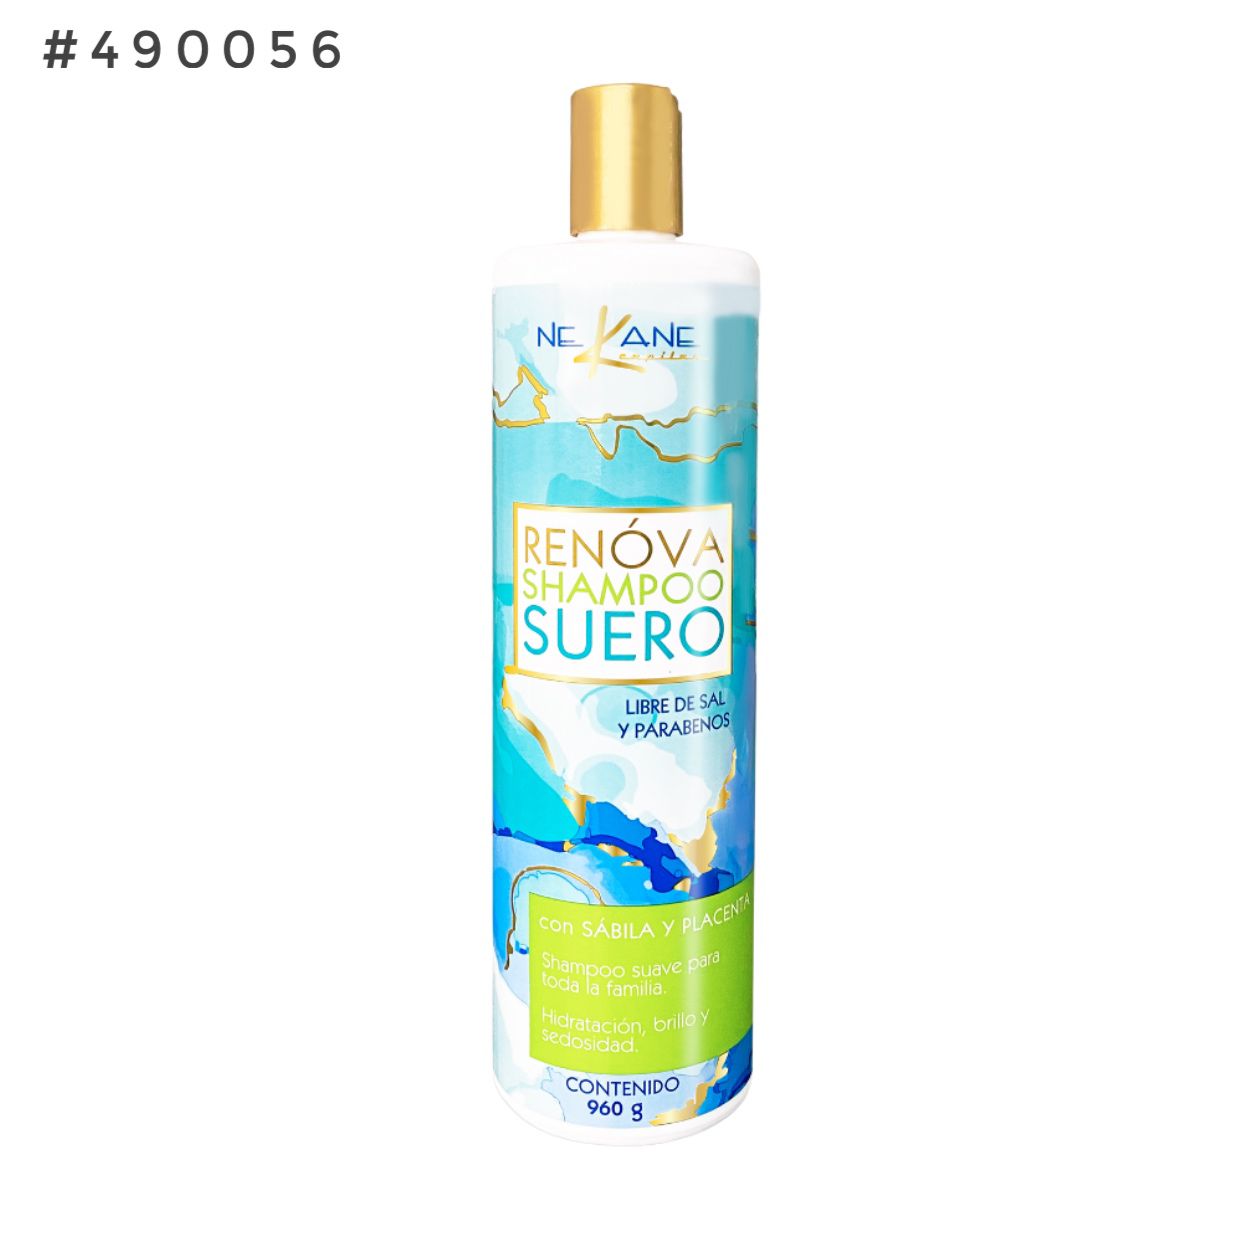 Shampoo suero renova 960 g 490056 nekane